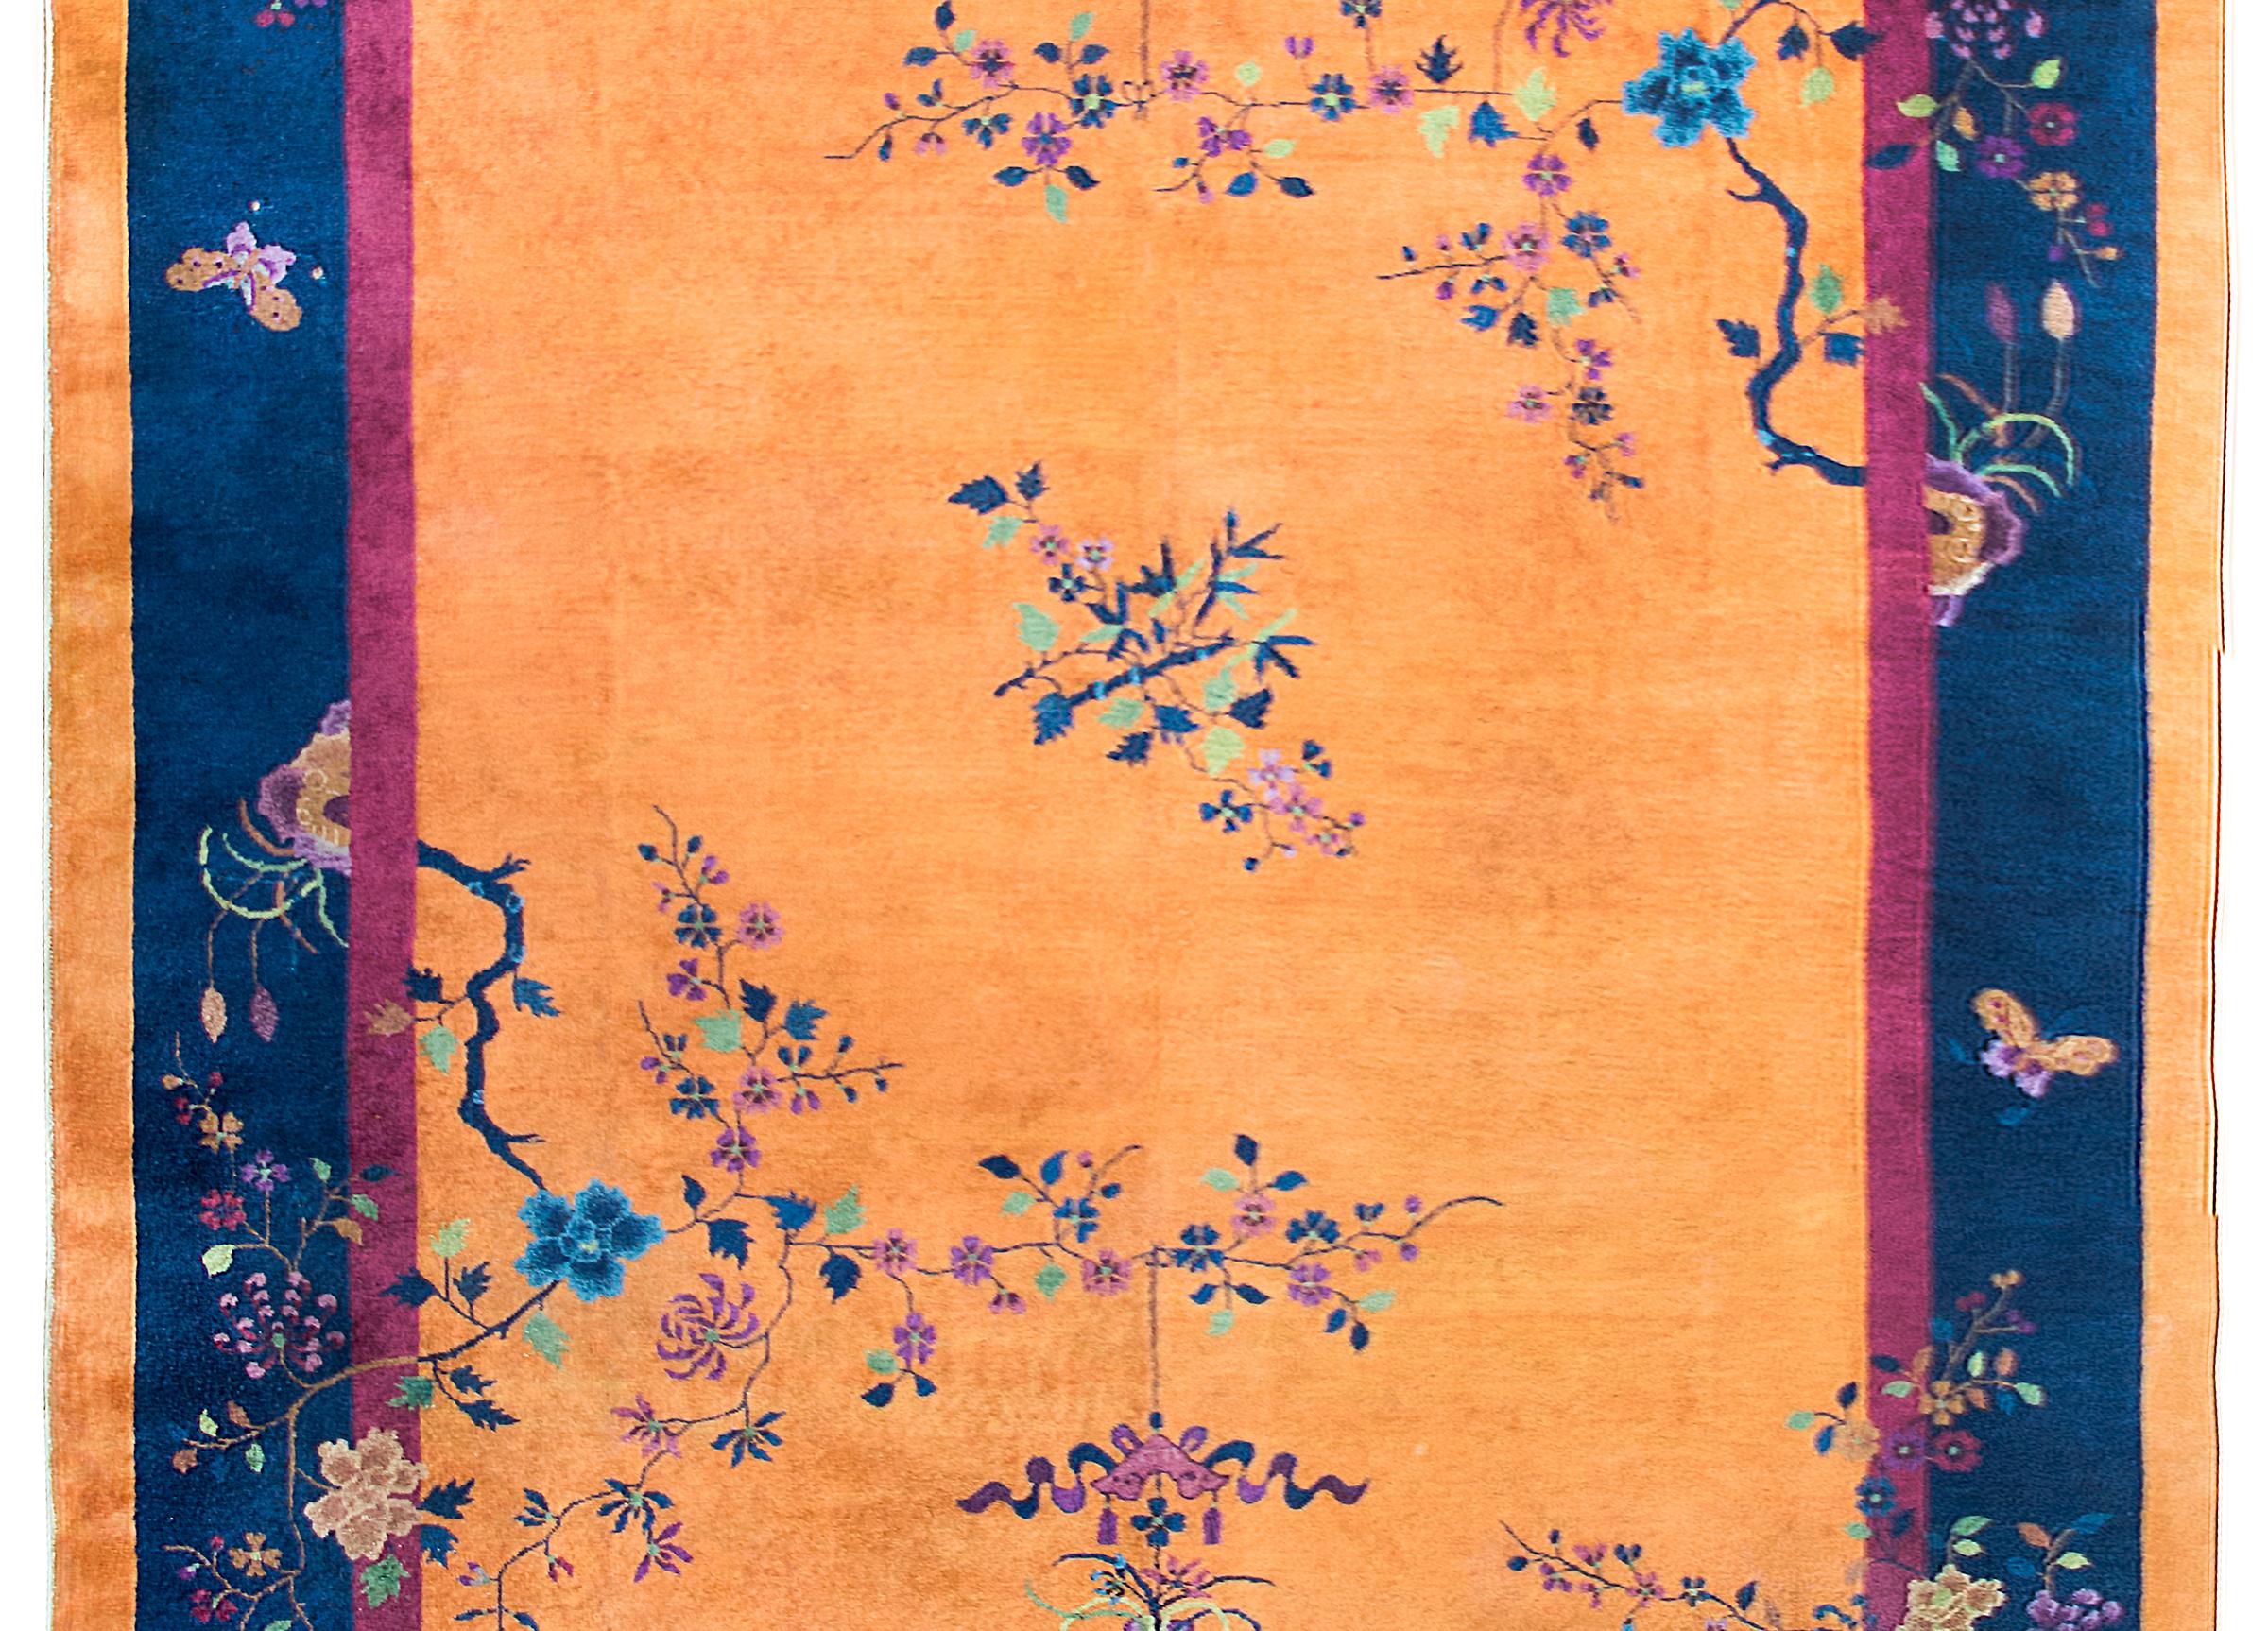 Ein fantastischer chinesischer Art-Déco-Teppich aus dem frühen 20. Jahrhundert mit einem leuchtend orangefarbenen Brausefeld, das von einem dünnen violetten Innenstreifen und einem breiten indigoblauen Außenstreifen umgeben ist. In den